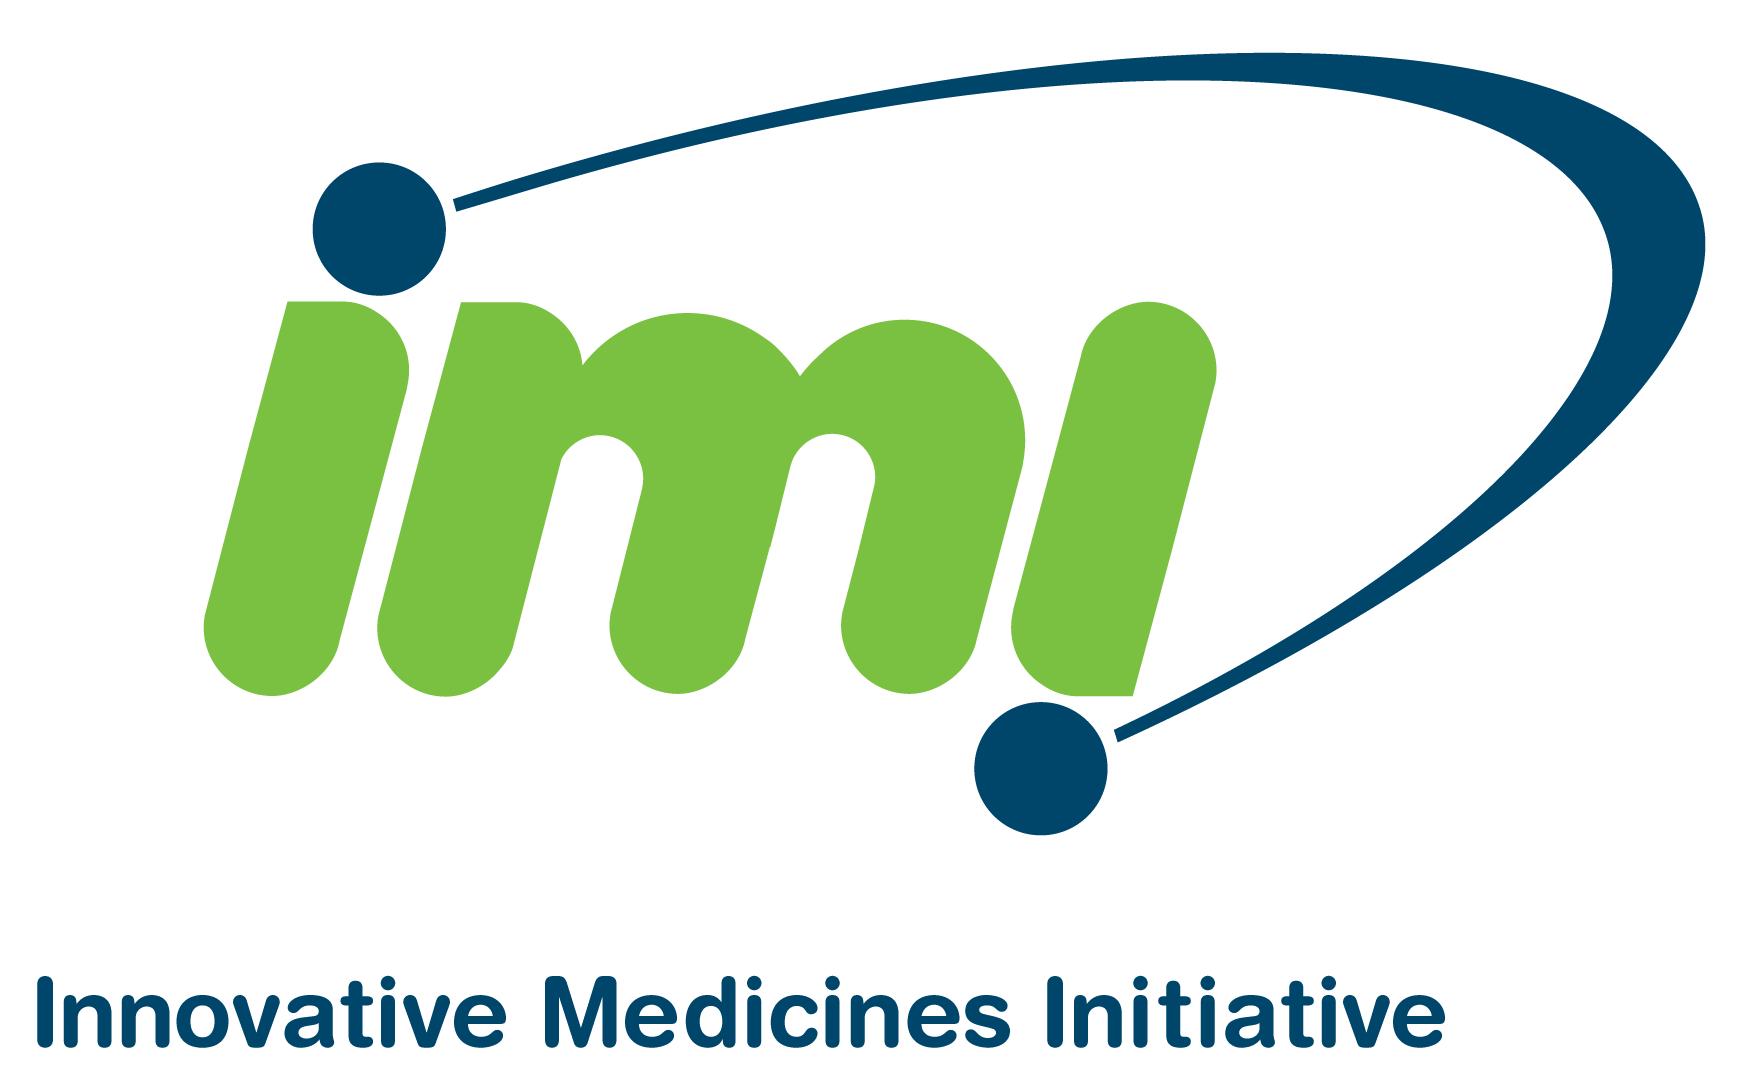 IMI1 logo